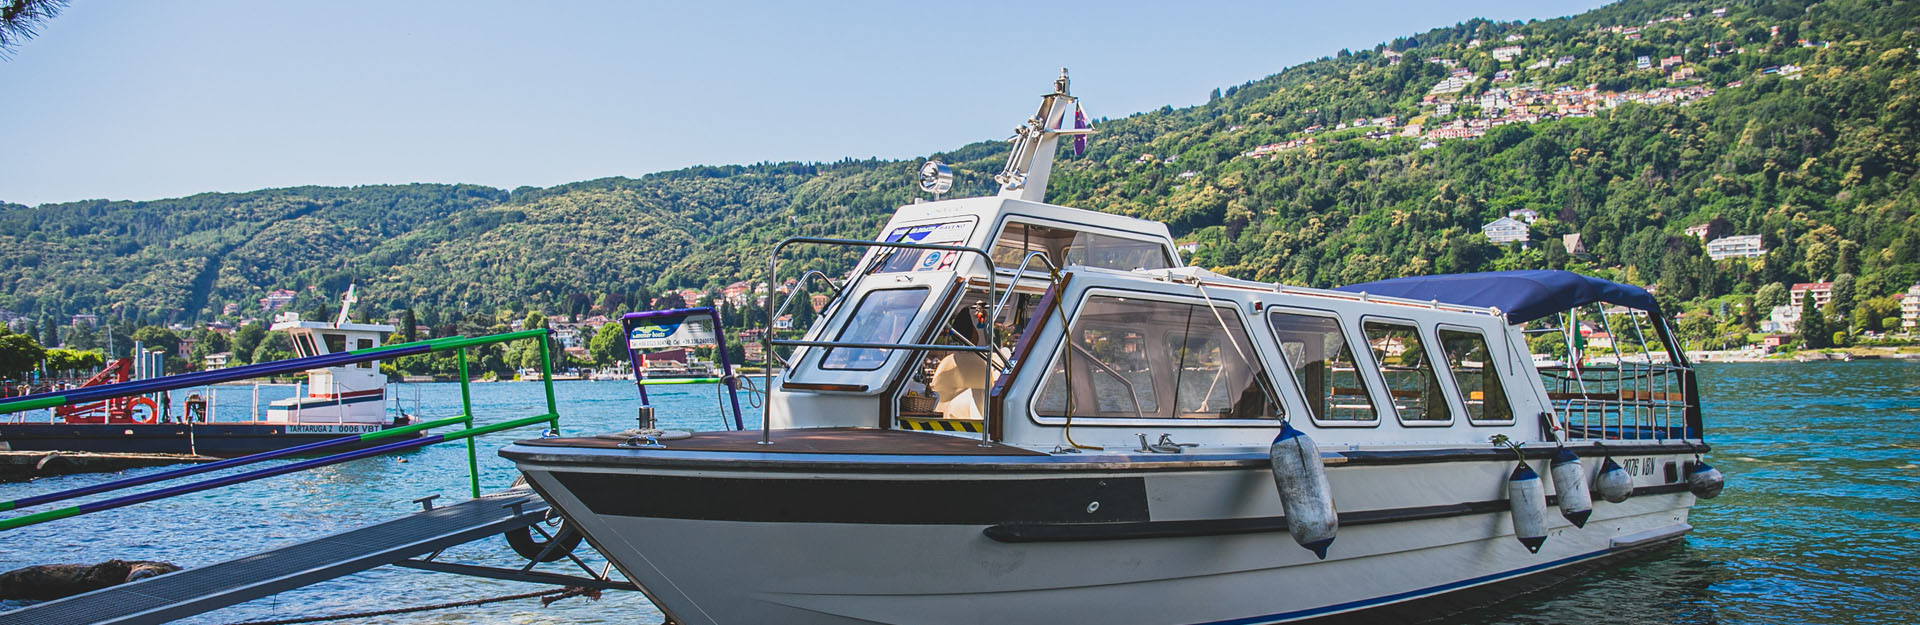 Summer Boats Consorzio Motoscafisti